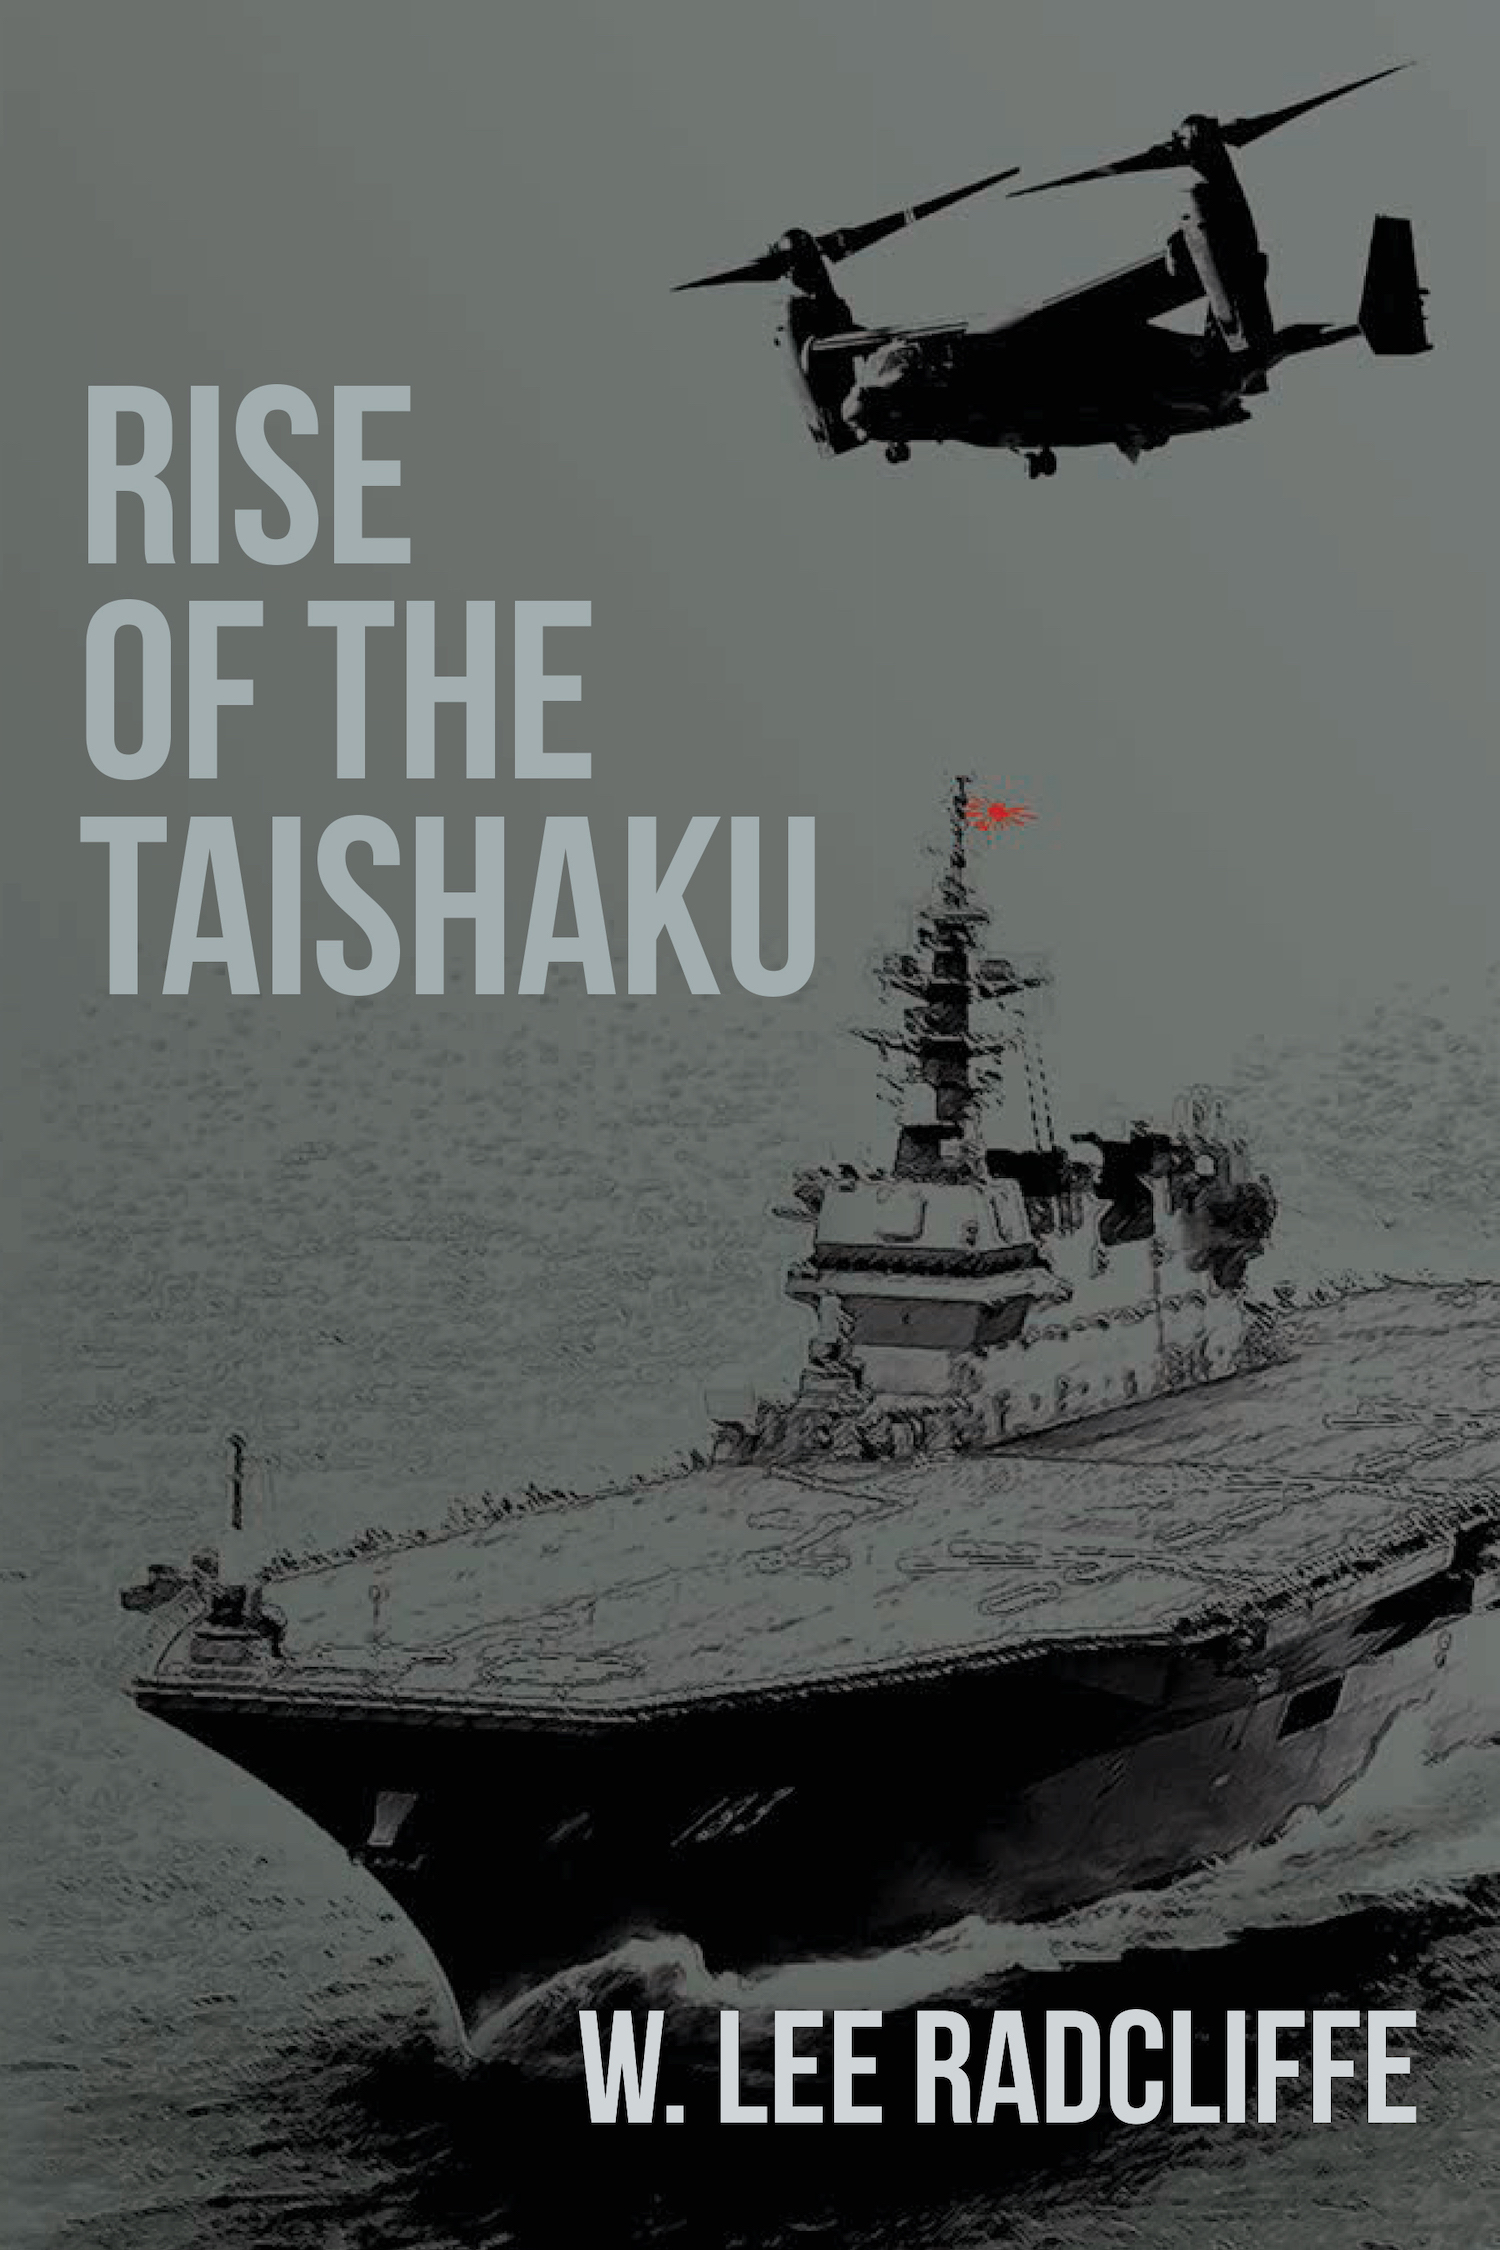 海上自衛隊船のかが: The JMSDF ship kaga on the cover of Rise of the Taishaku